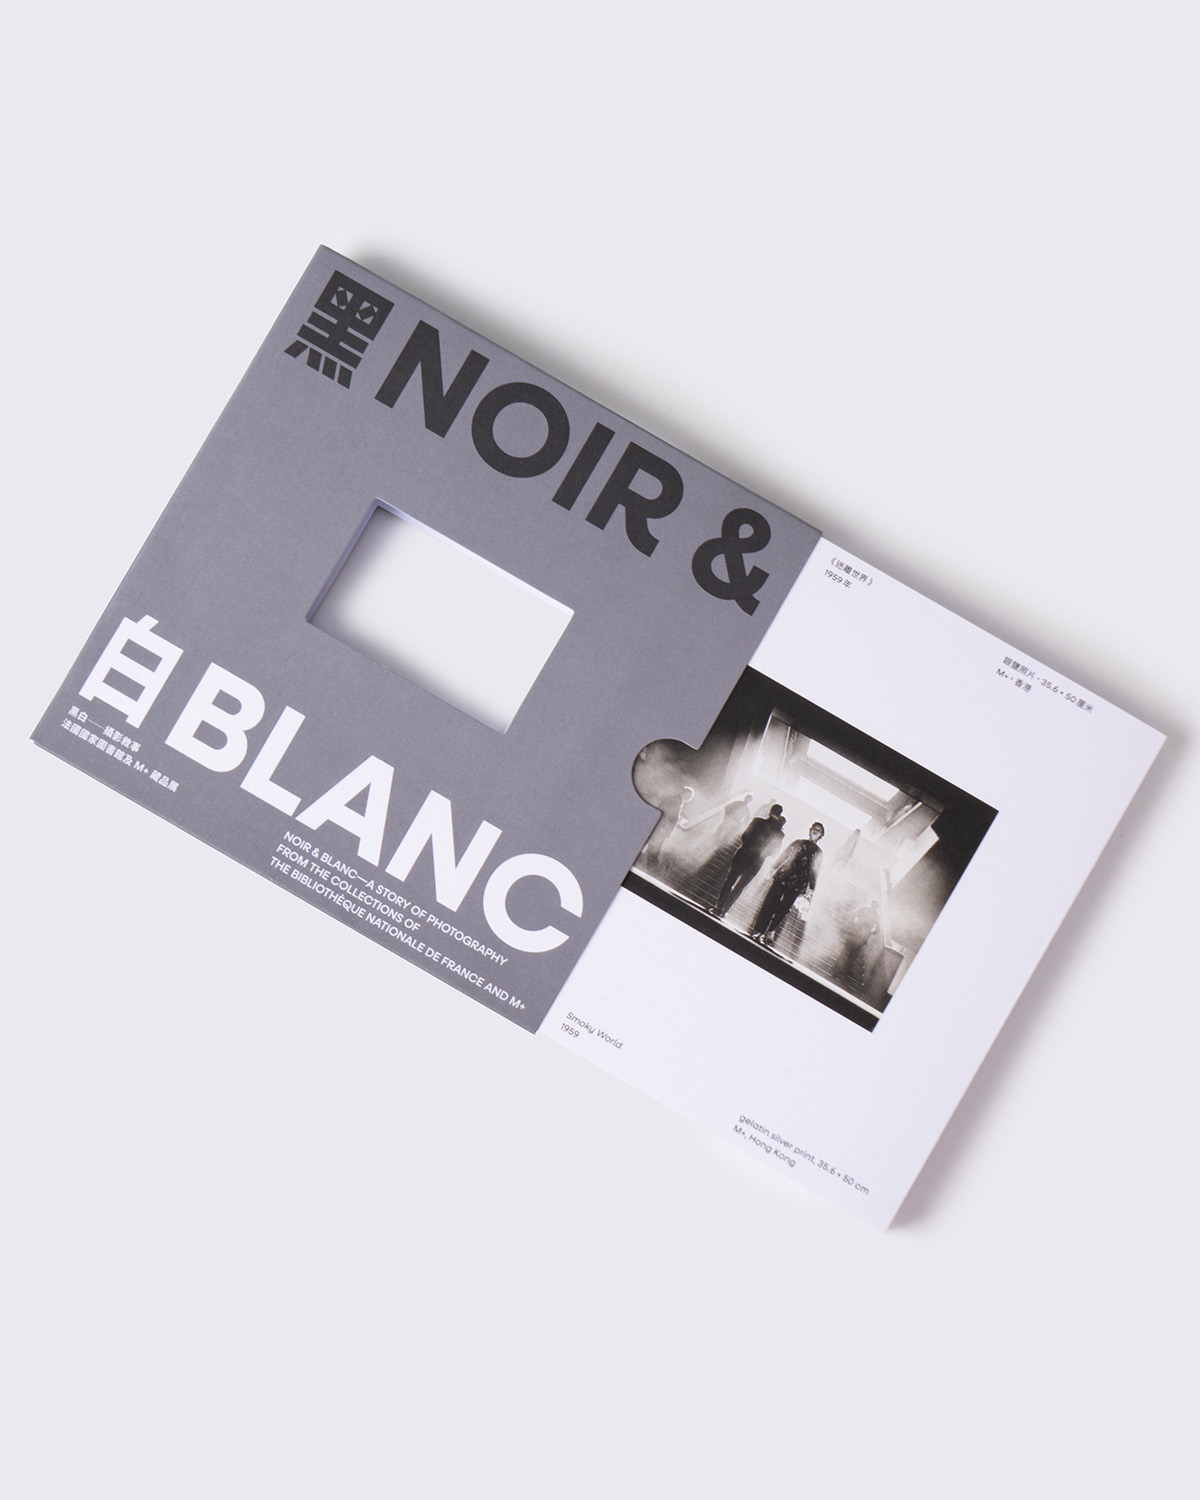 M+ Noir & Blanc Special Edition Camera Set